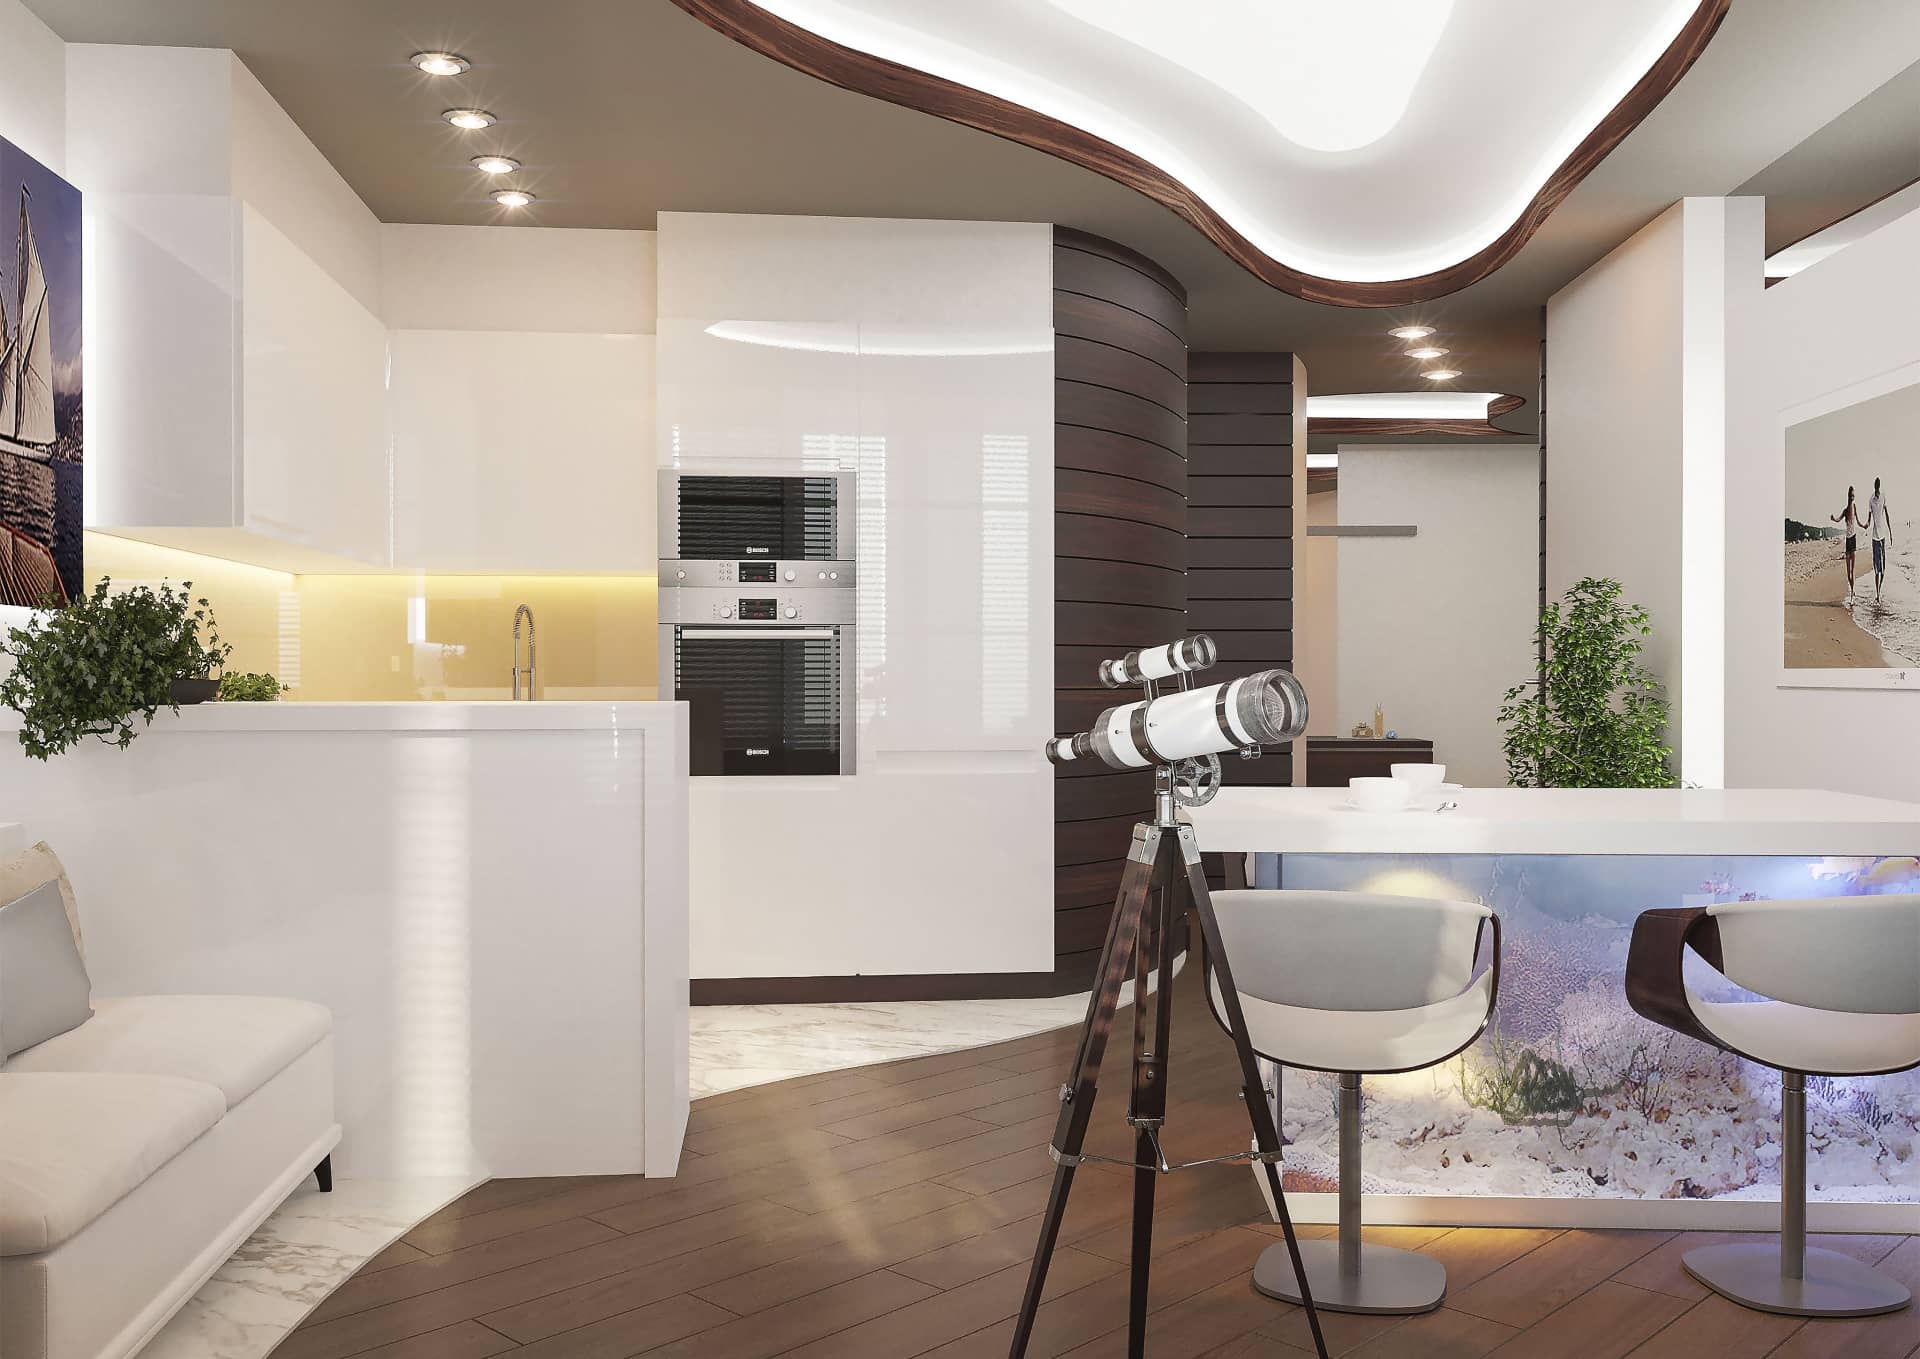 Кухня современного стиля белого цвета с глянцевыми шкафами